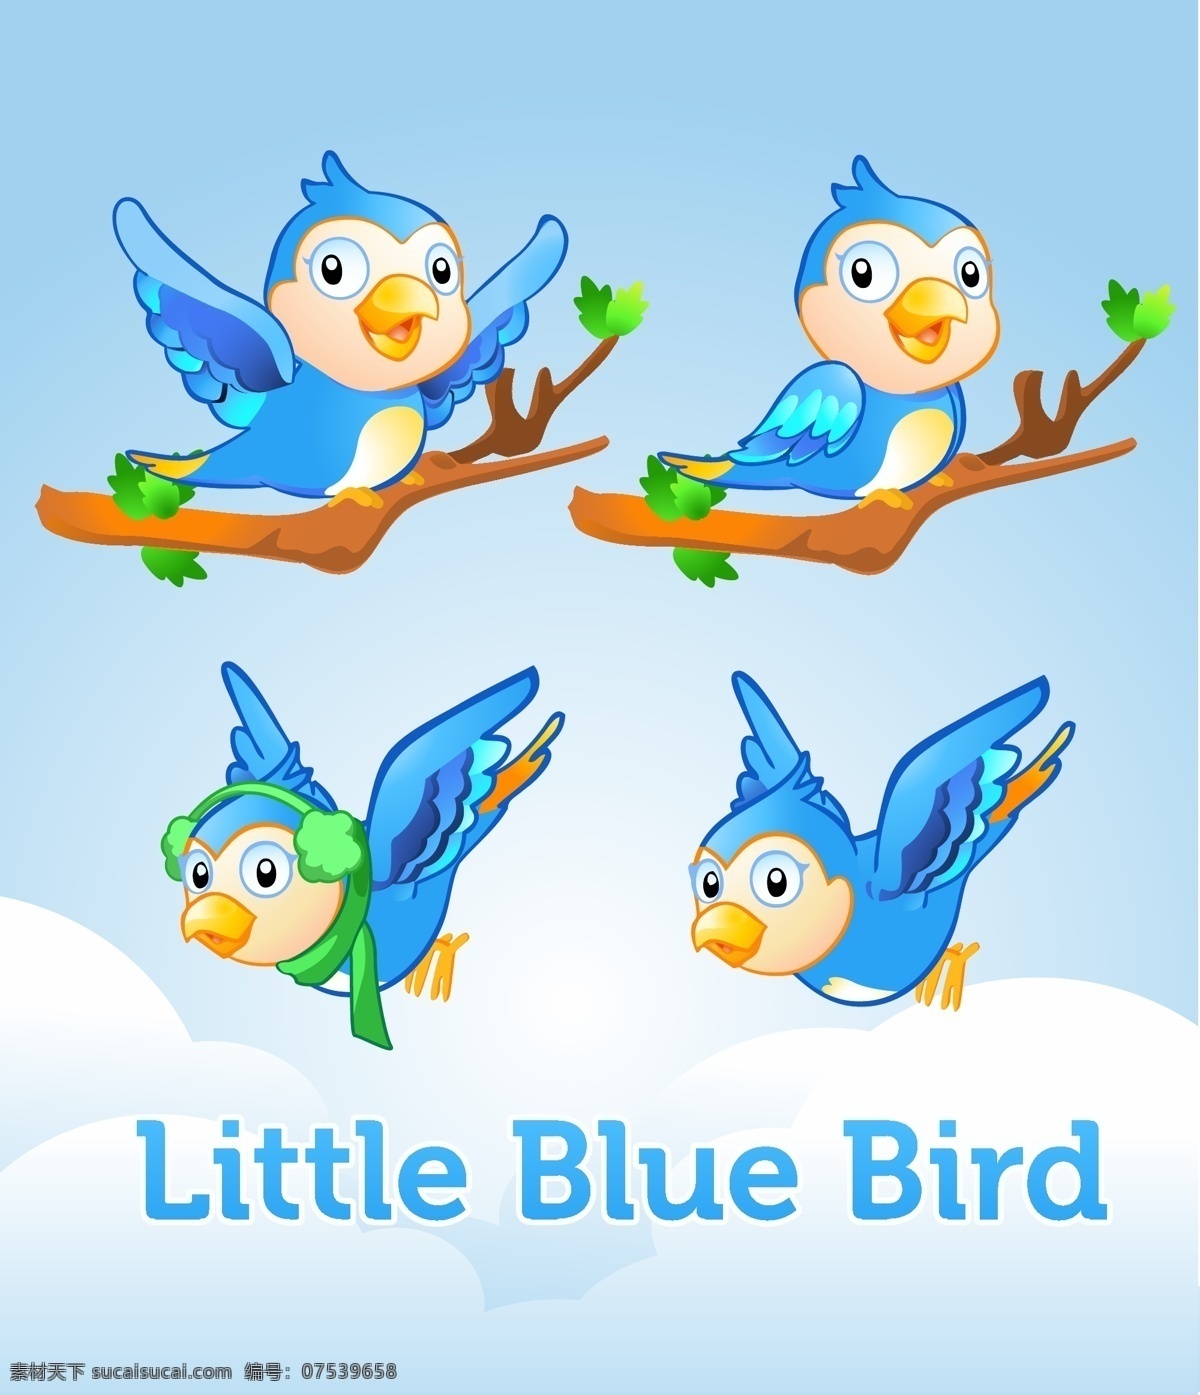 小 蓝鸟 向量 卡通矢量 鸟 自由 矢量 推特 矢量图 矢量人物